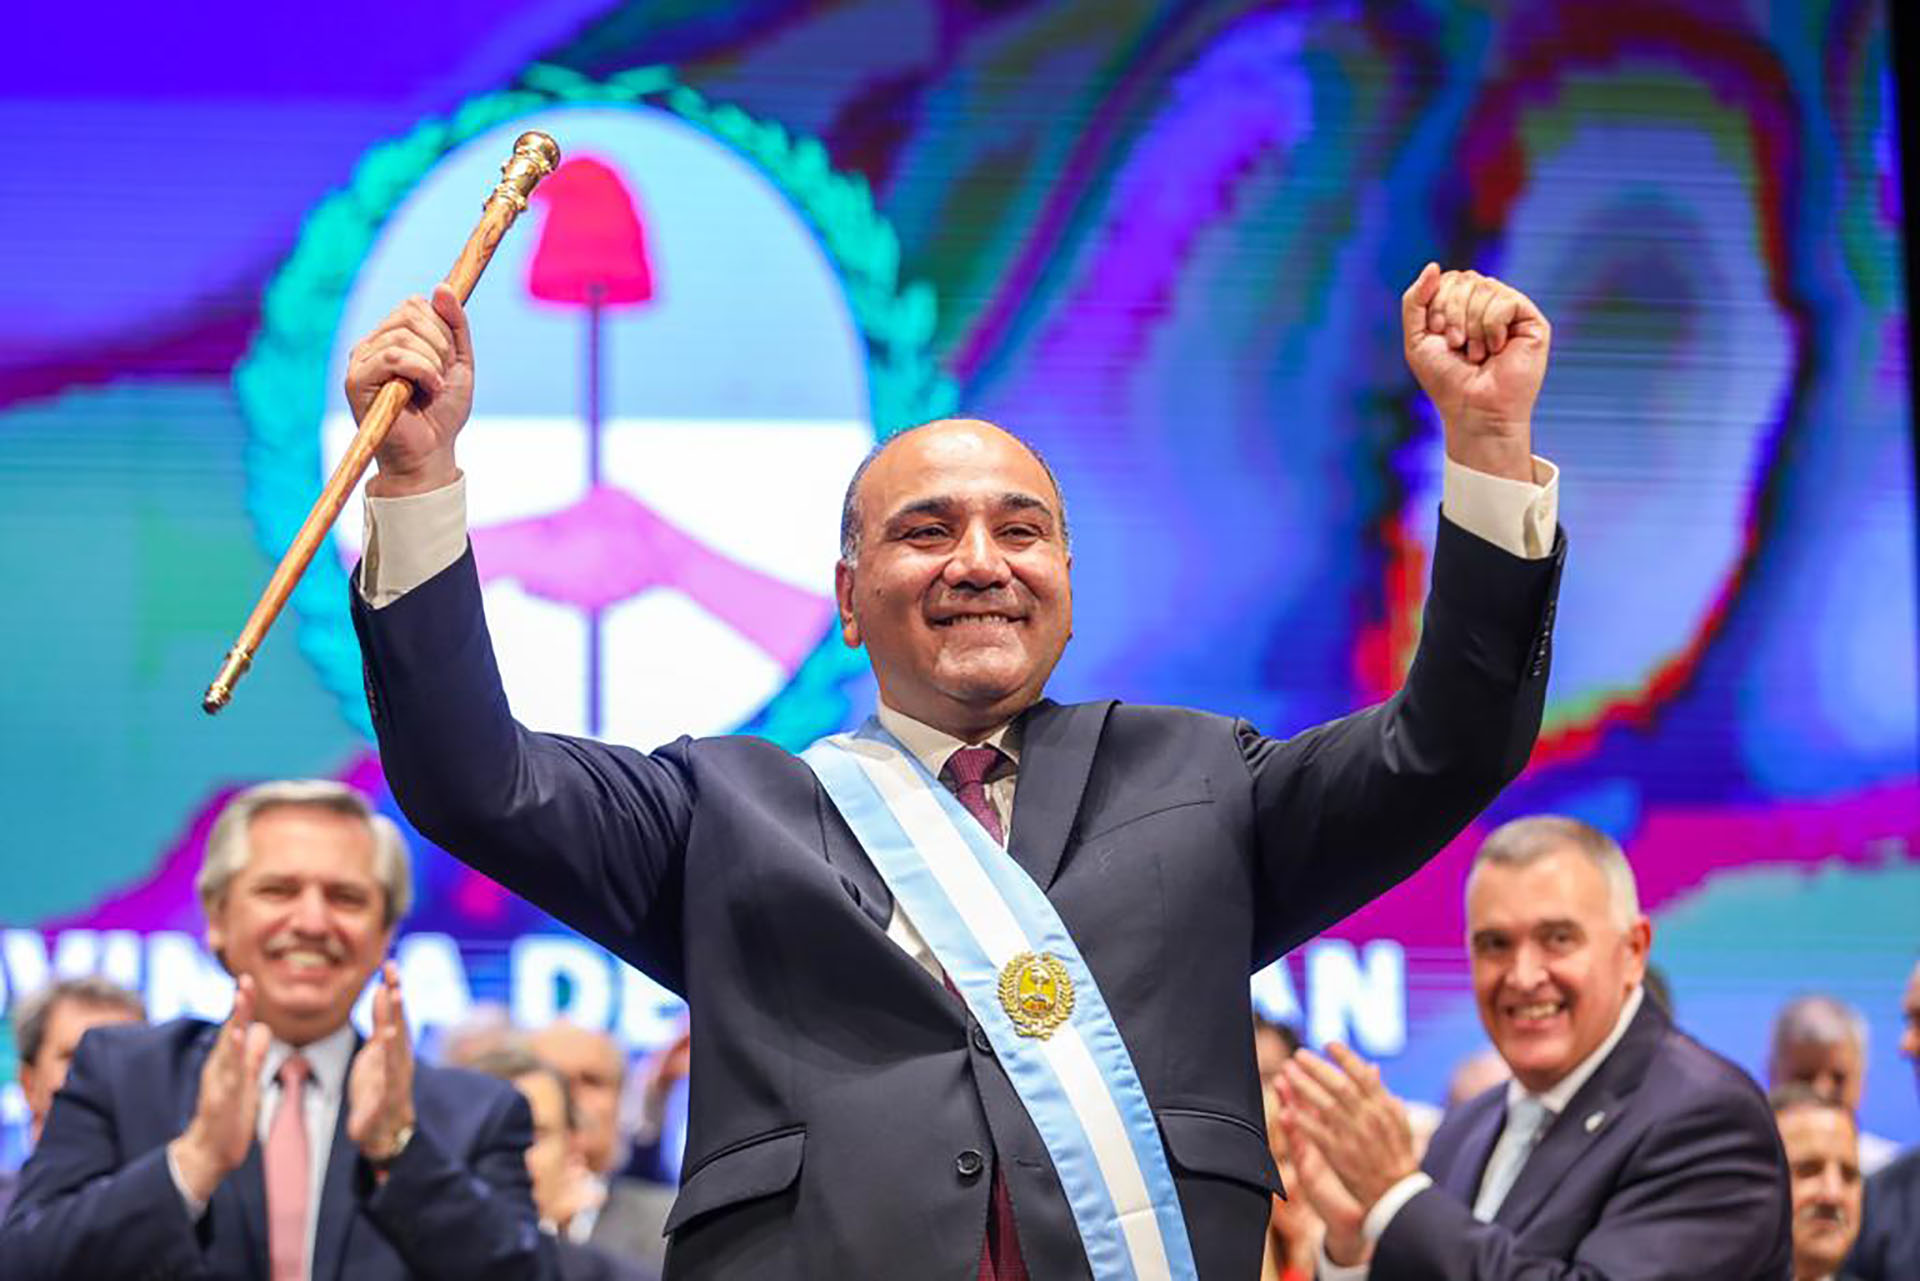 El gobernador de Tucumán, Juan Manzur, se convirtió en el nuevo Jefe de Gabinete 